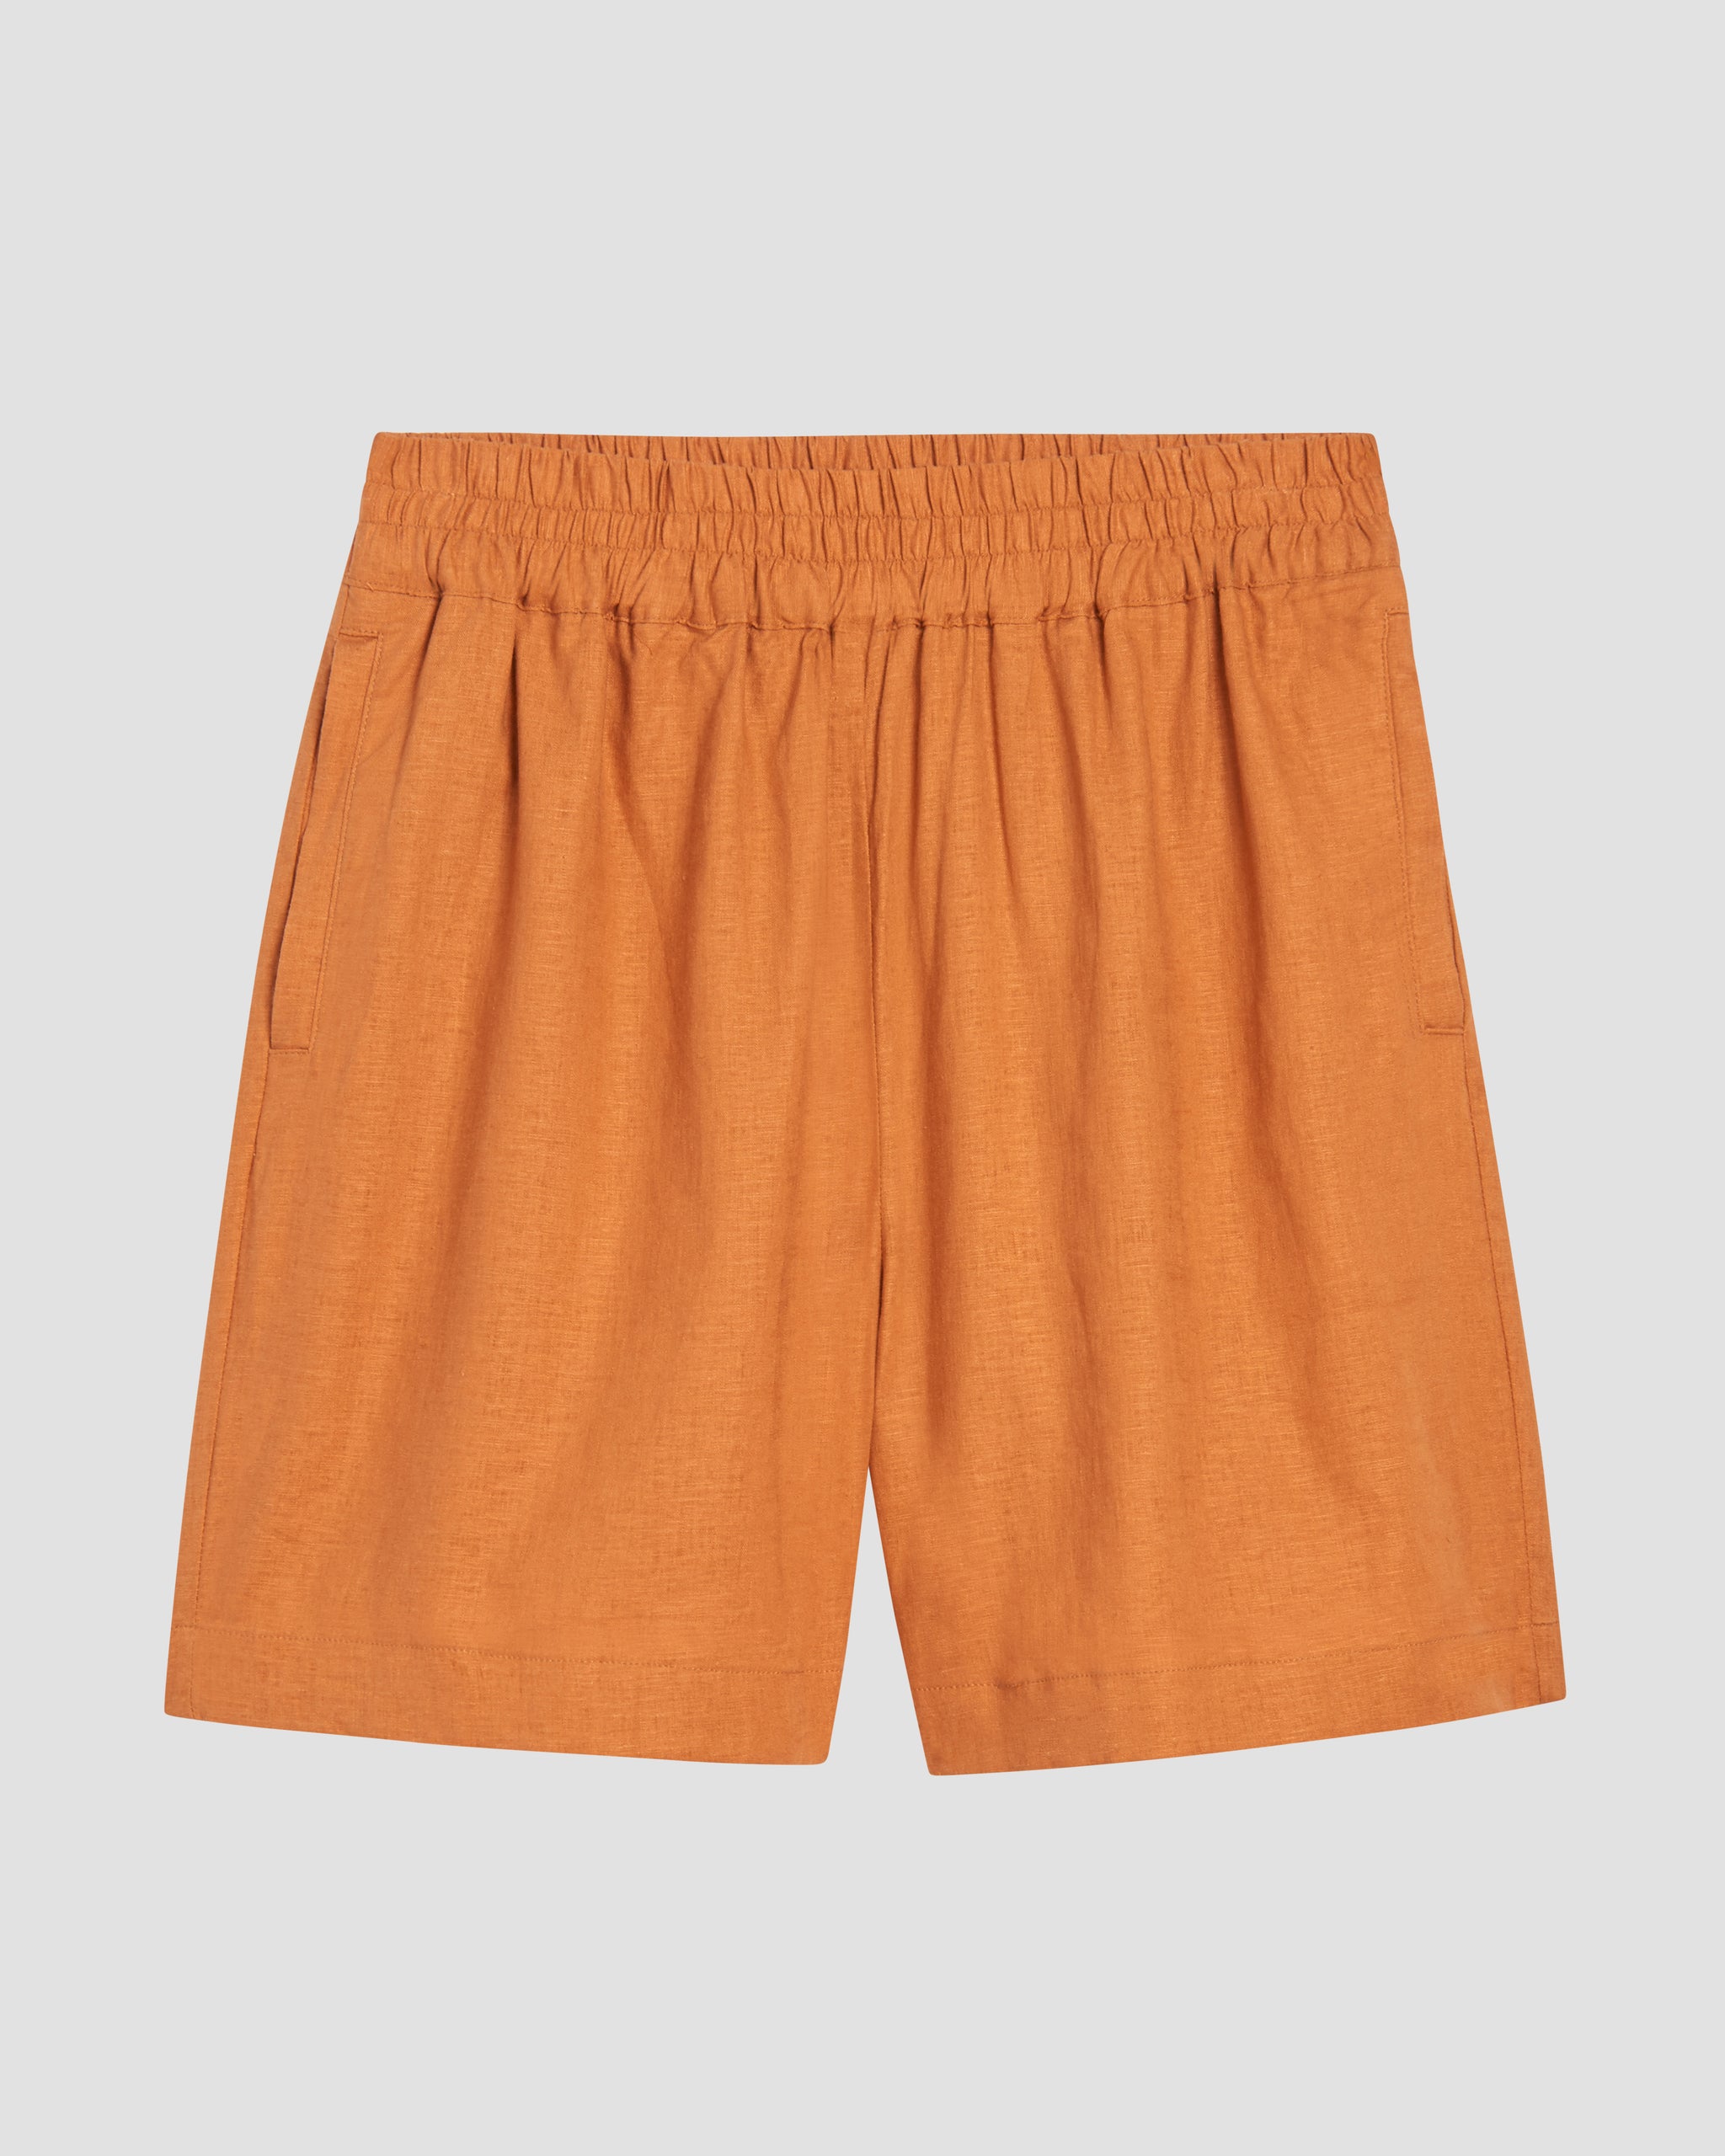 Juniper Linen Easy Pull-On Shorts - Caramel | Universal Standard